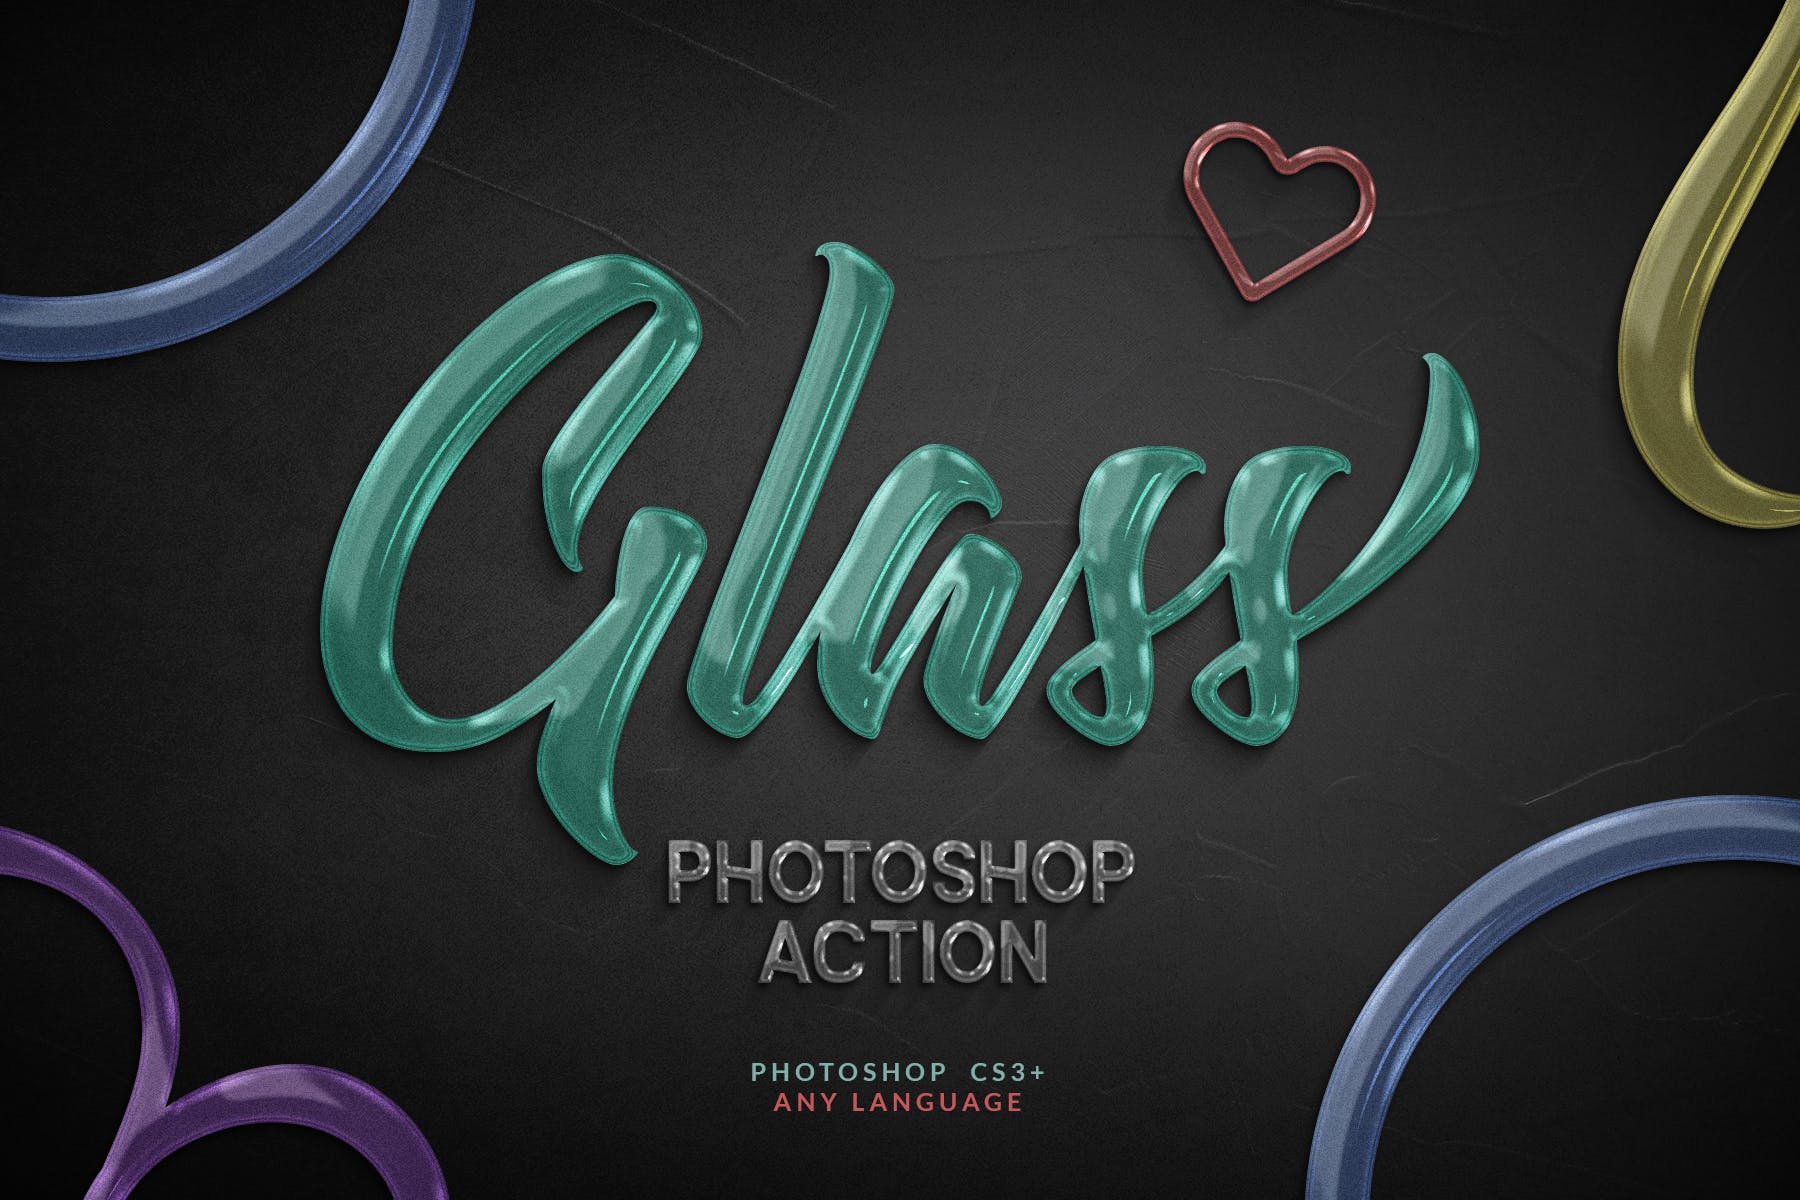 一键生成创意玻璃文字亿图网易图库精选PS动作 Glass Photoshop Action插图